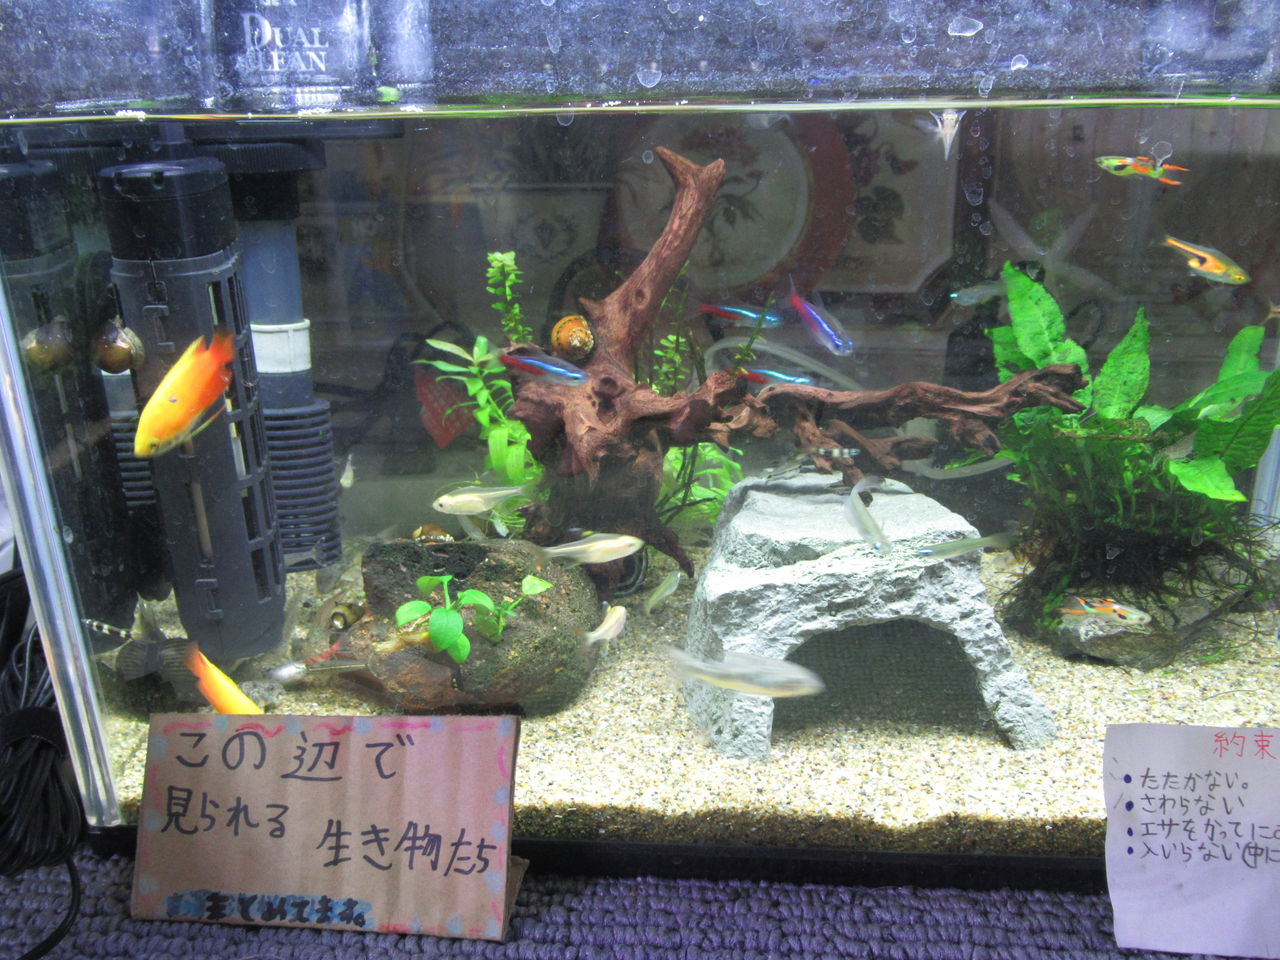 熱帯魚水槽 ネオンテトラが食べられる 虎ノ門虎之助のベランダ ラボラトリー Ft メダカ